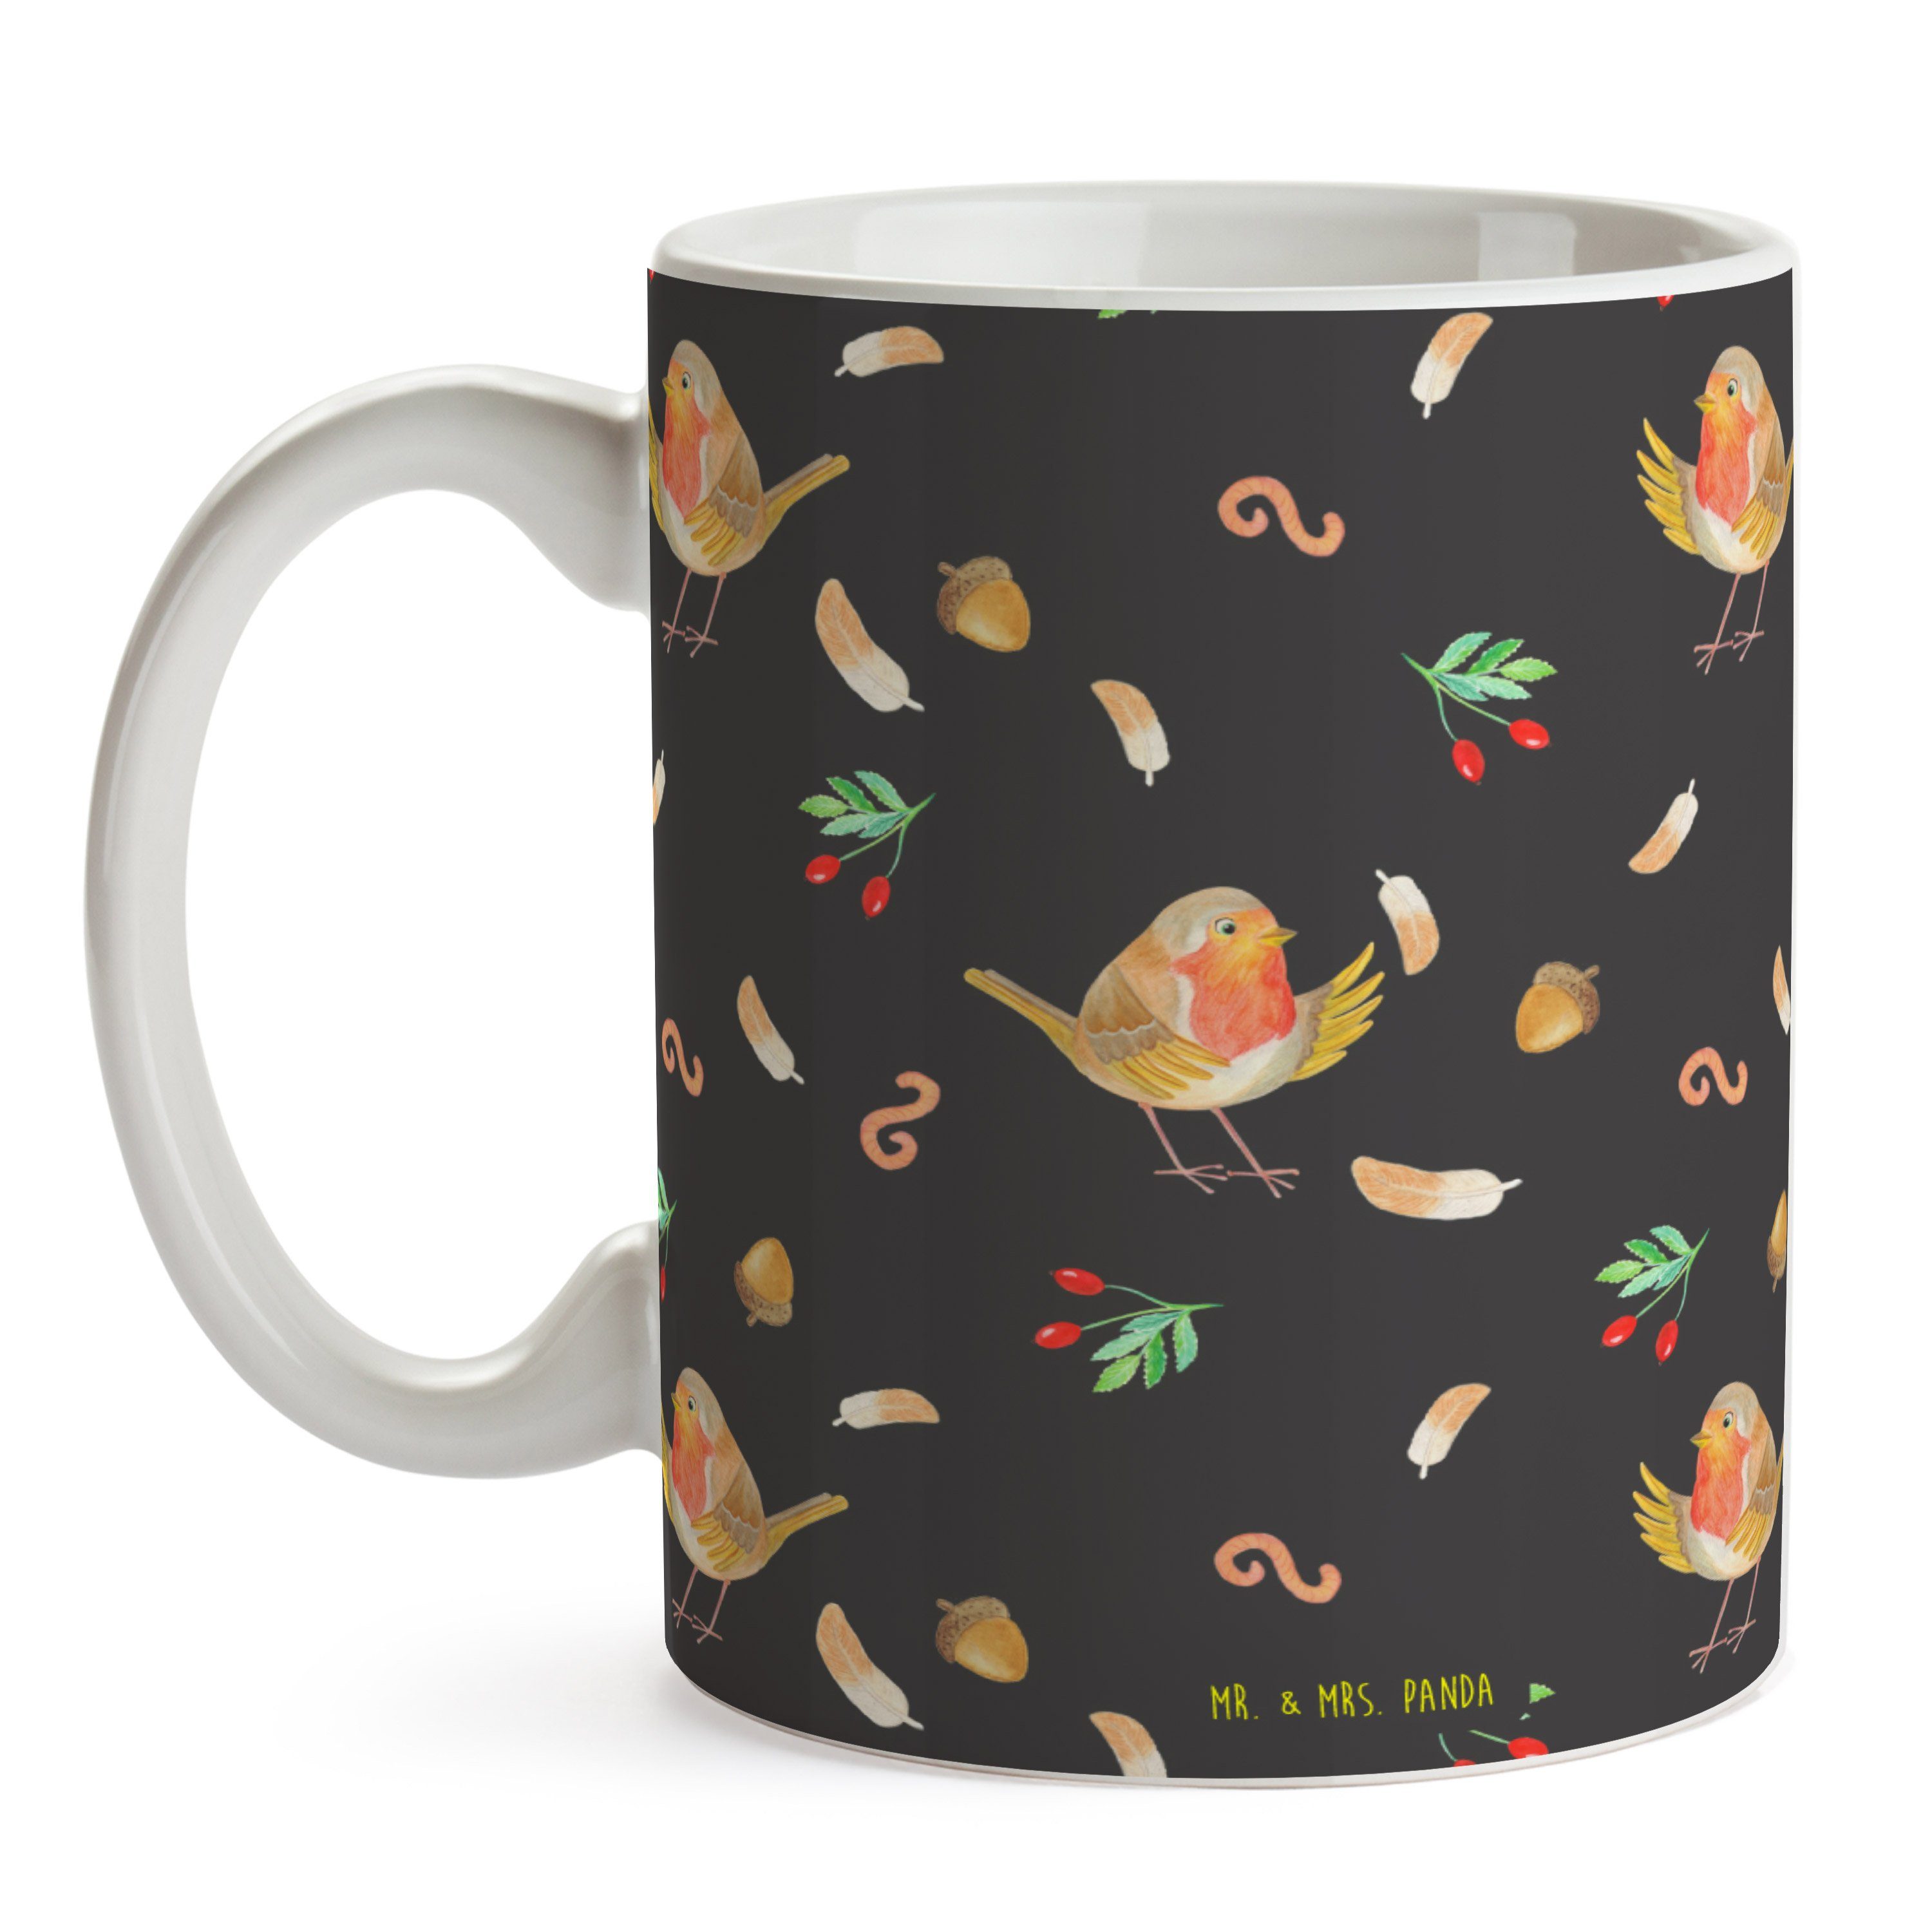 Mr. & Mrs. Panda Tasse Rotkehlchen mit Federn - Grau - Geschenk, Tasse Sprüche, Kaffeetasse, Keramik